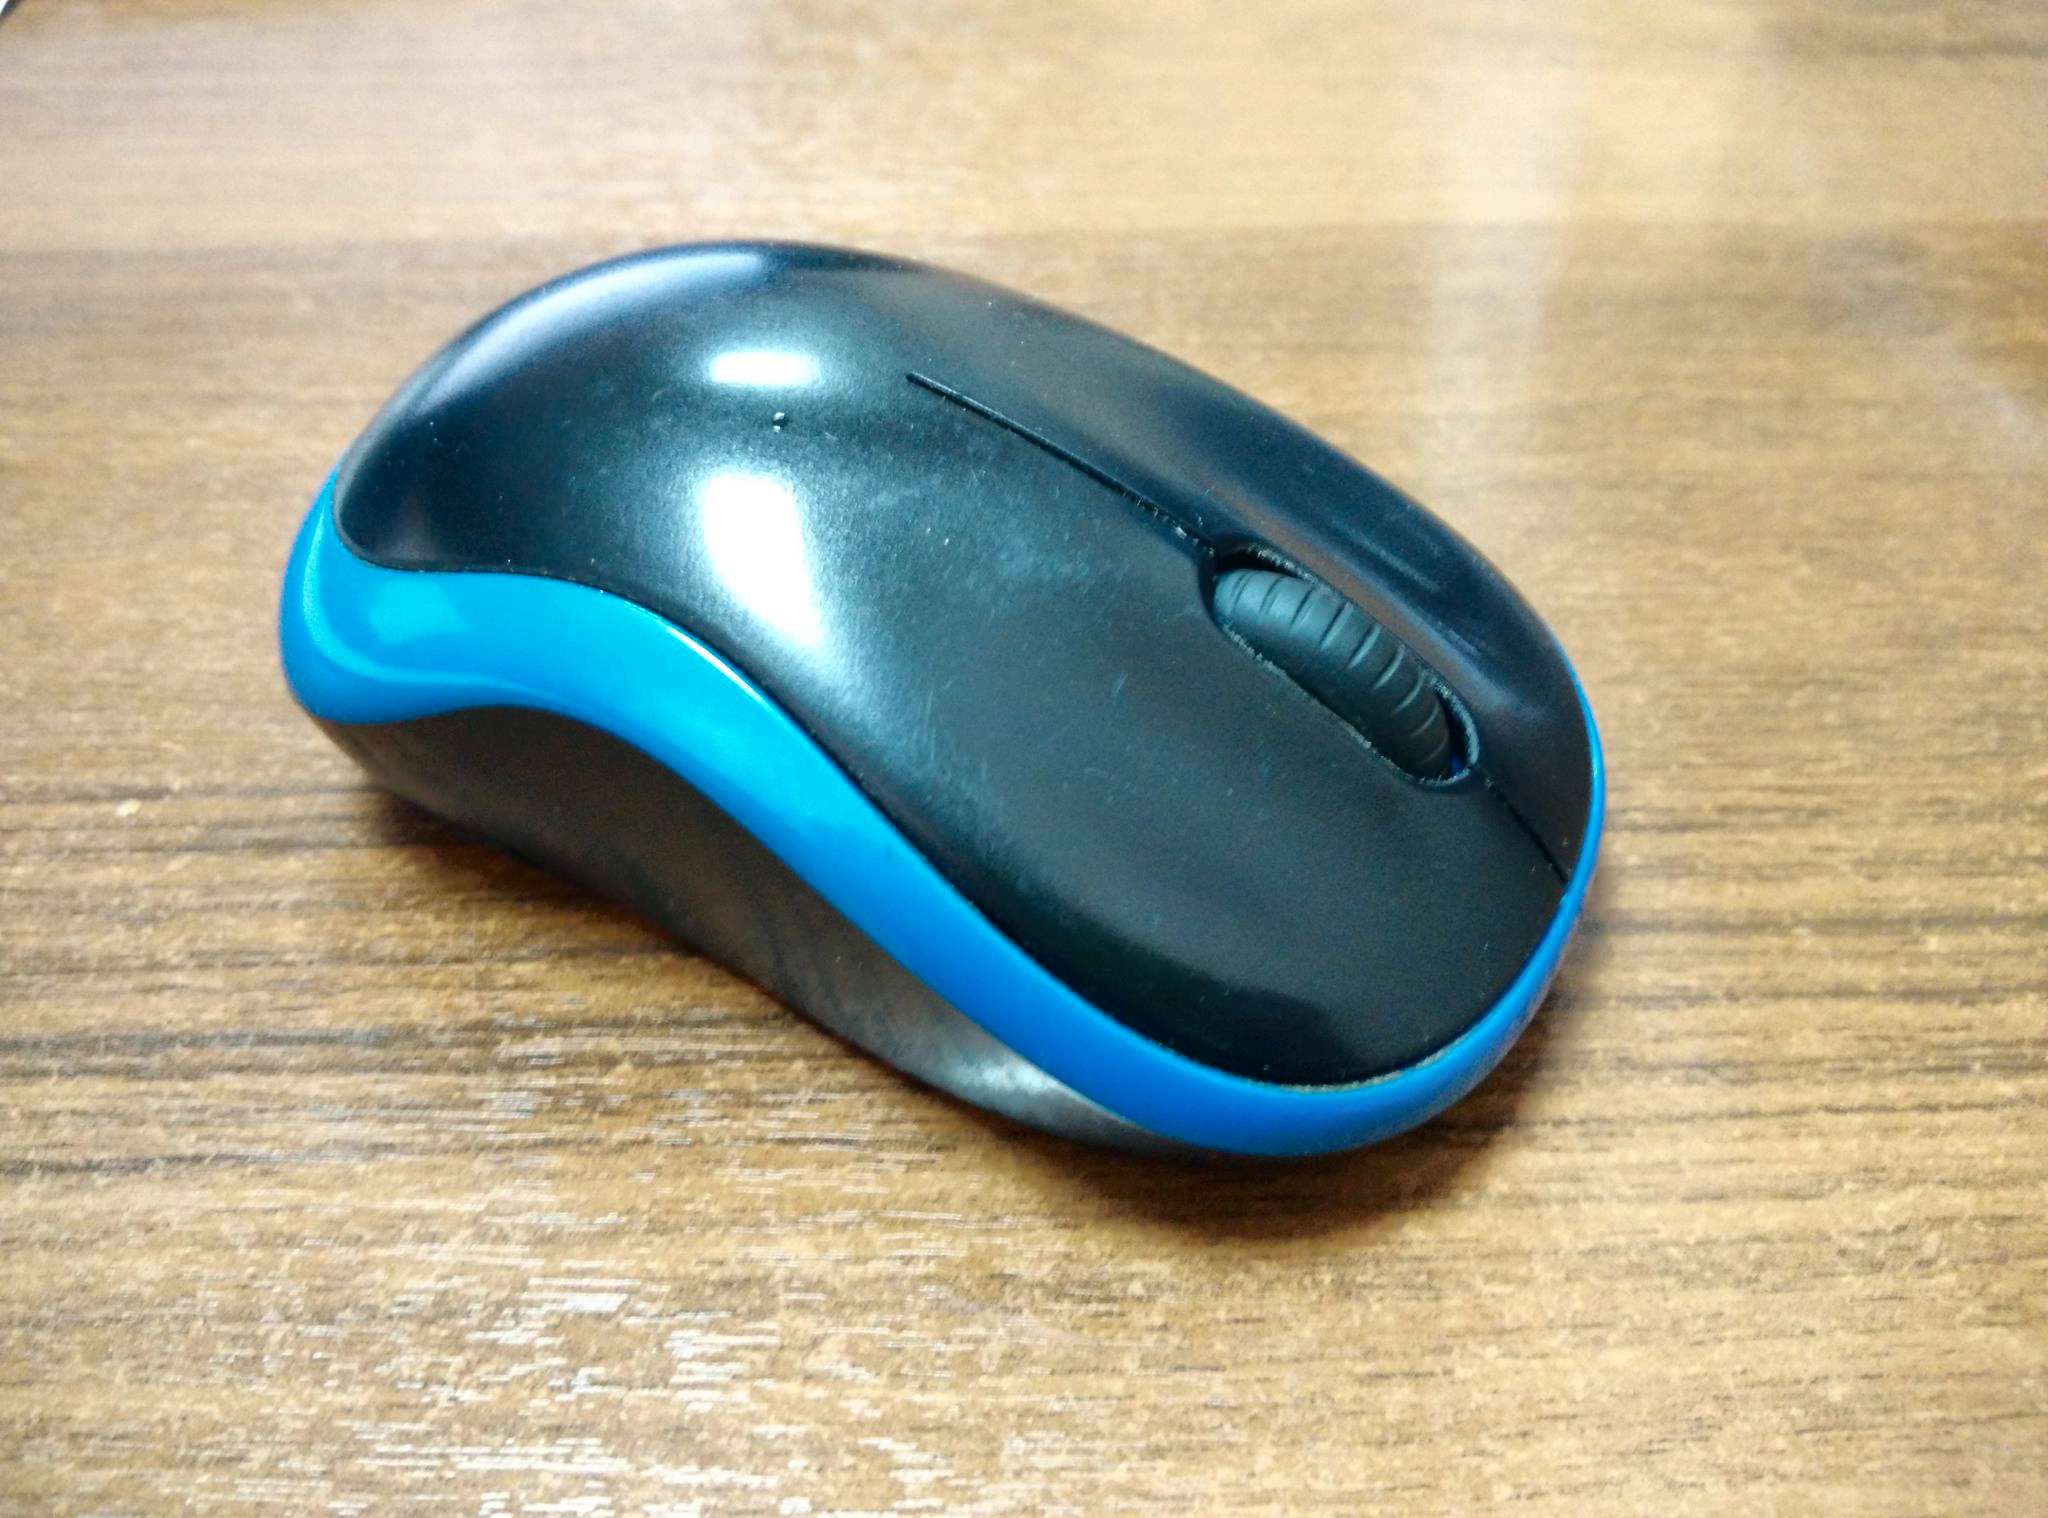 Logitech mouse blinking blue light